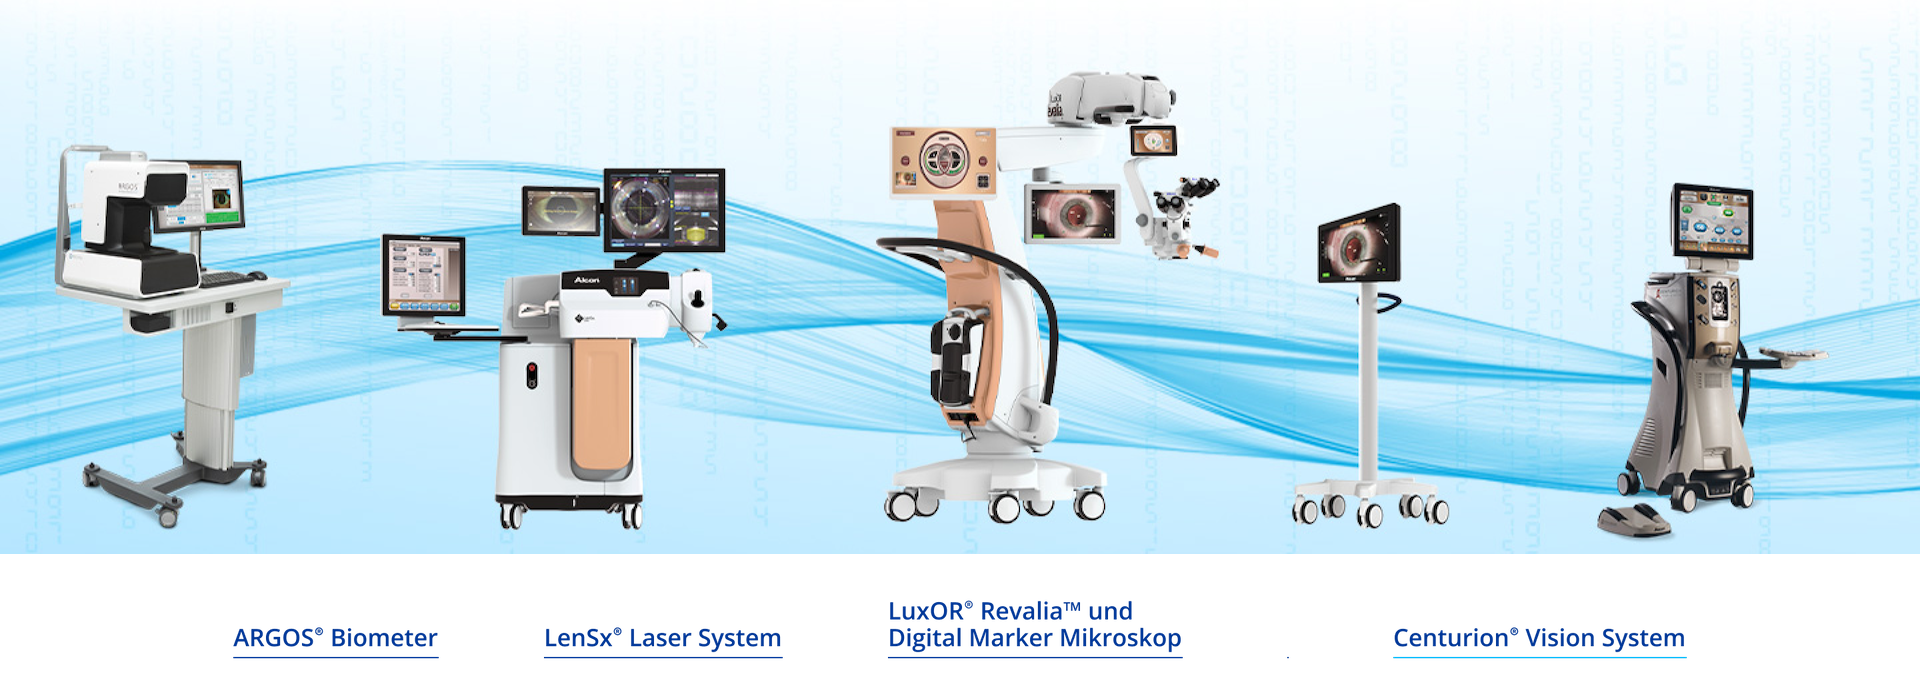 Ein Bild, das die einzelnen chirurgischen Geräte von Alcon zeigt. Das ARGOS Biometer, LenSx Laser System, LuxOR Revalia Mikroskop, Verion Digital Marker, Centurion Vision System, ORA SYSTEM Intraoperatives Abberometer.